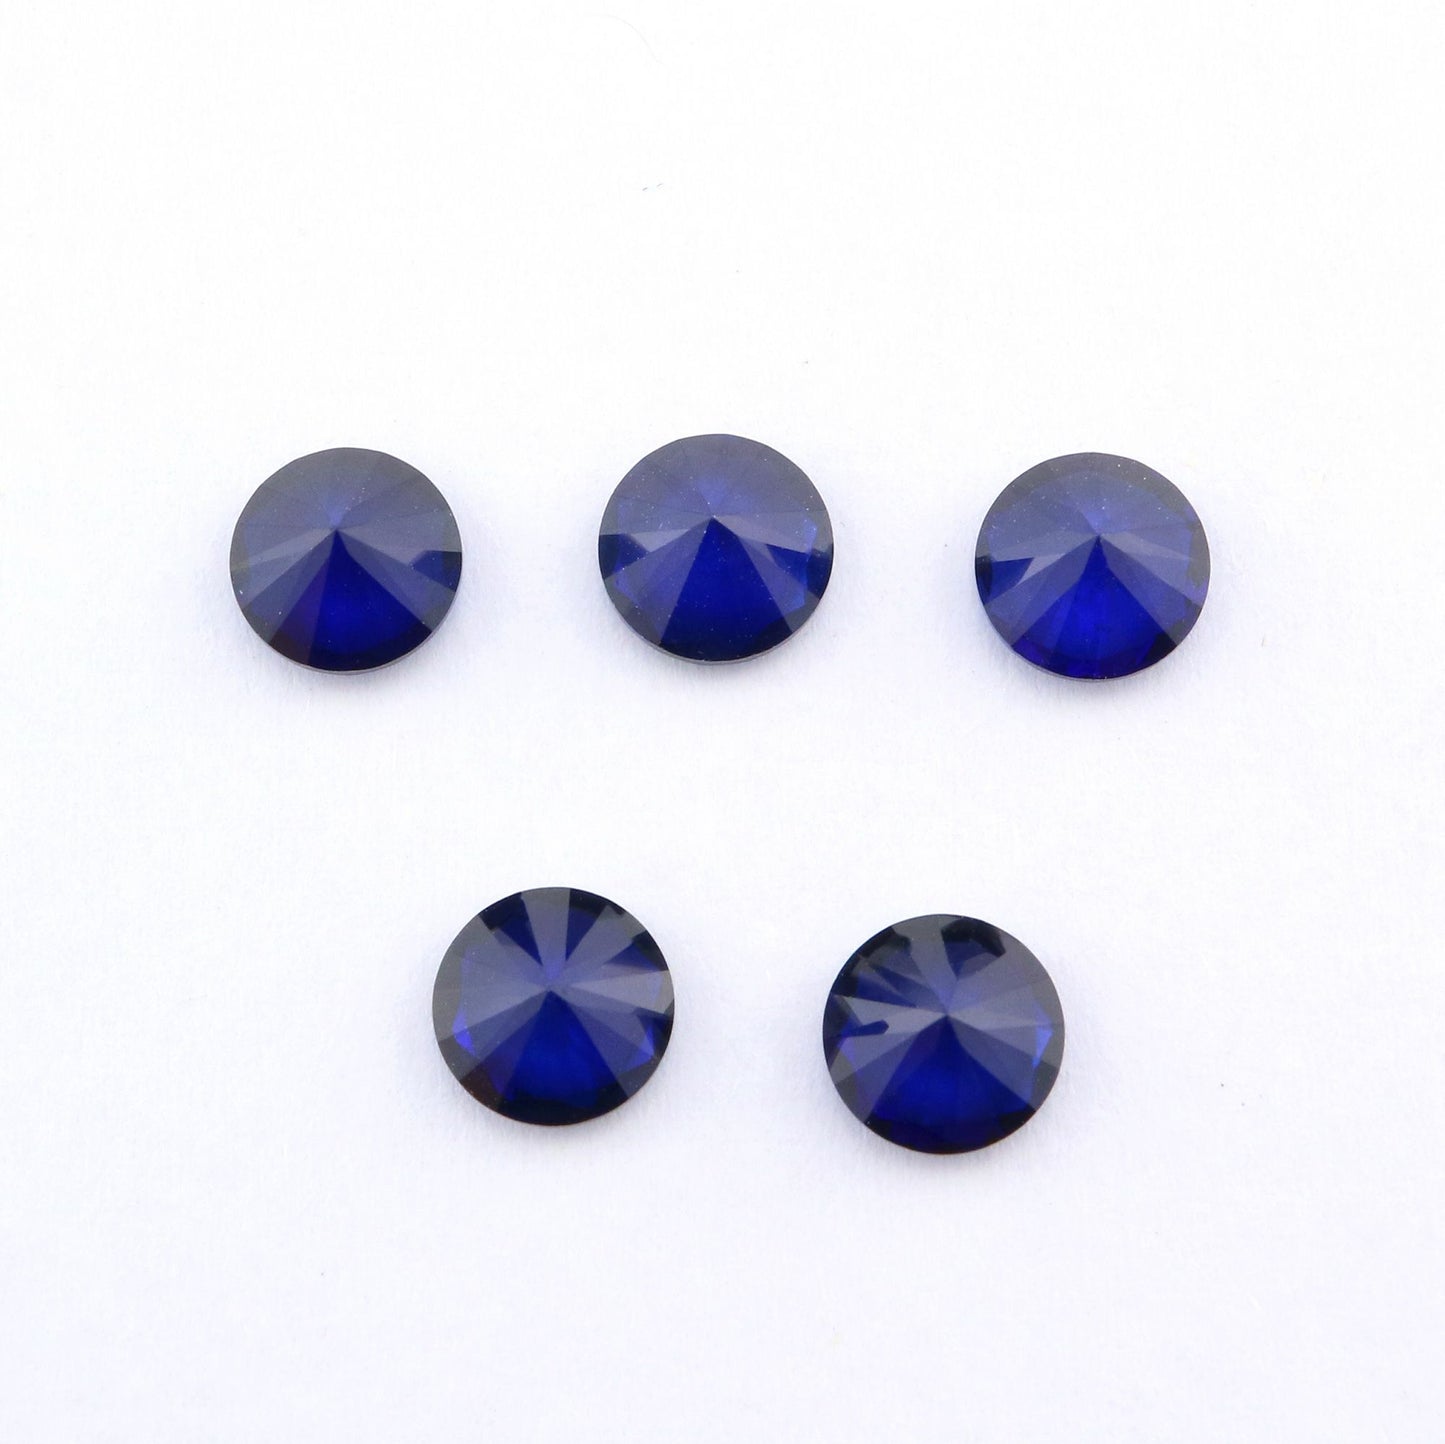 Five dark blue round cut lab created sapphire.